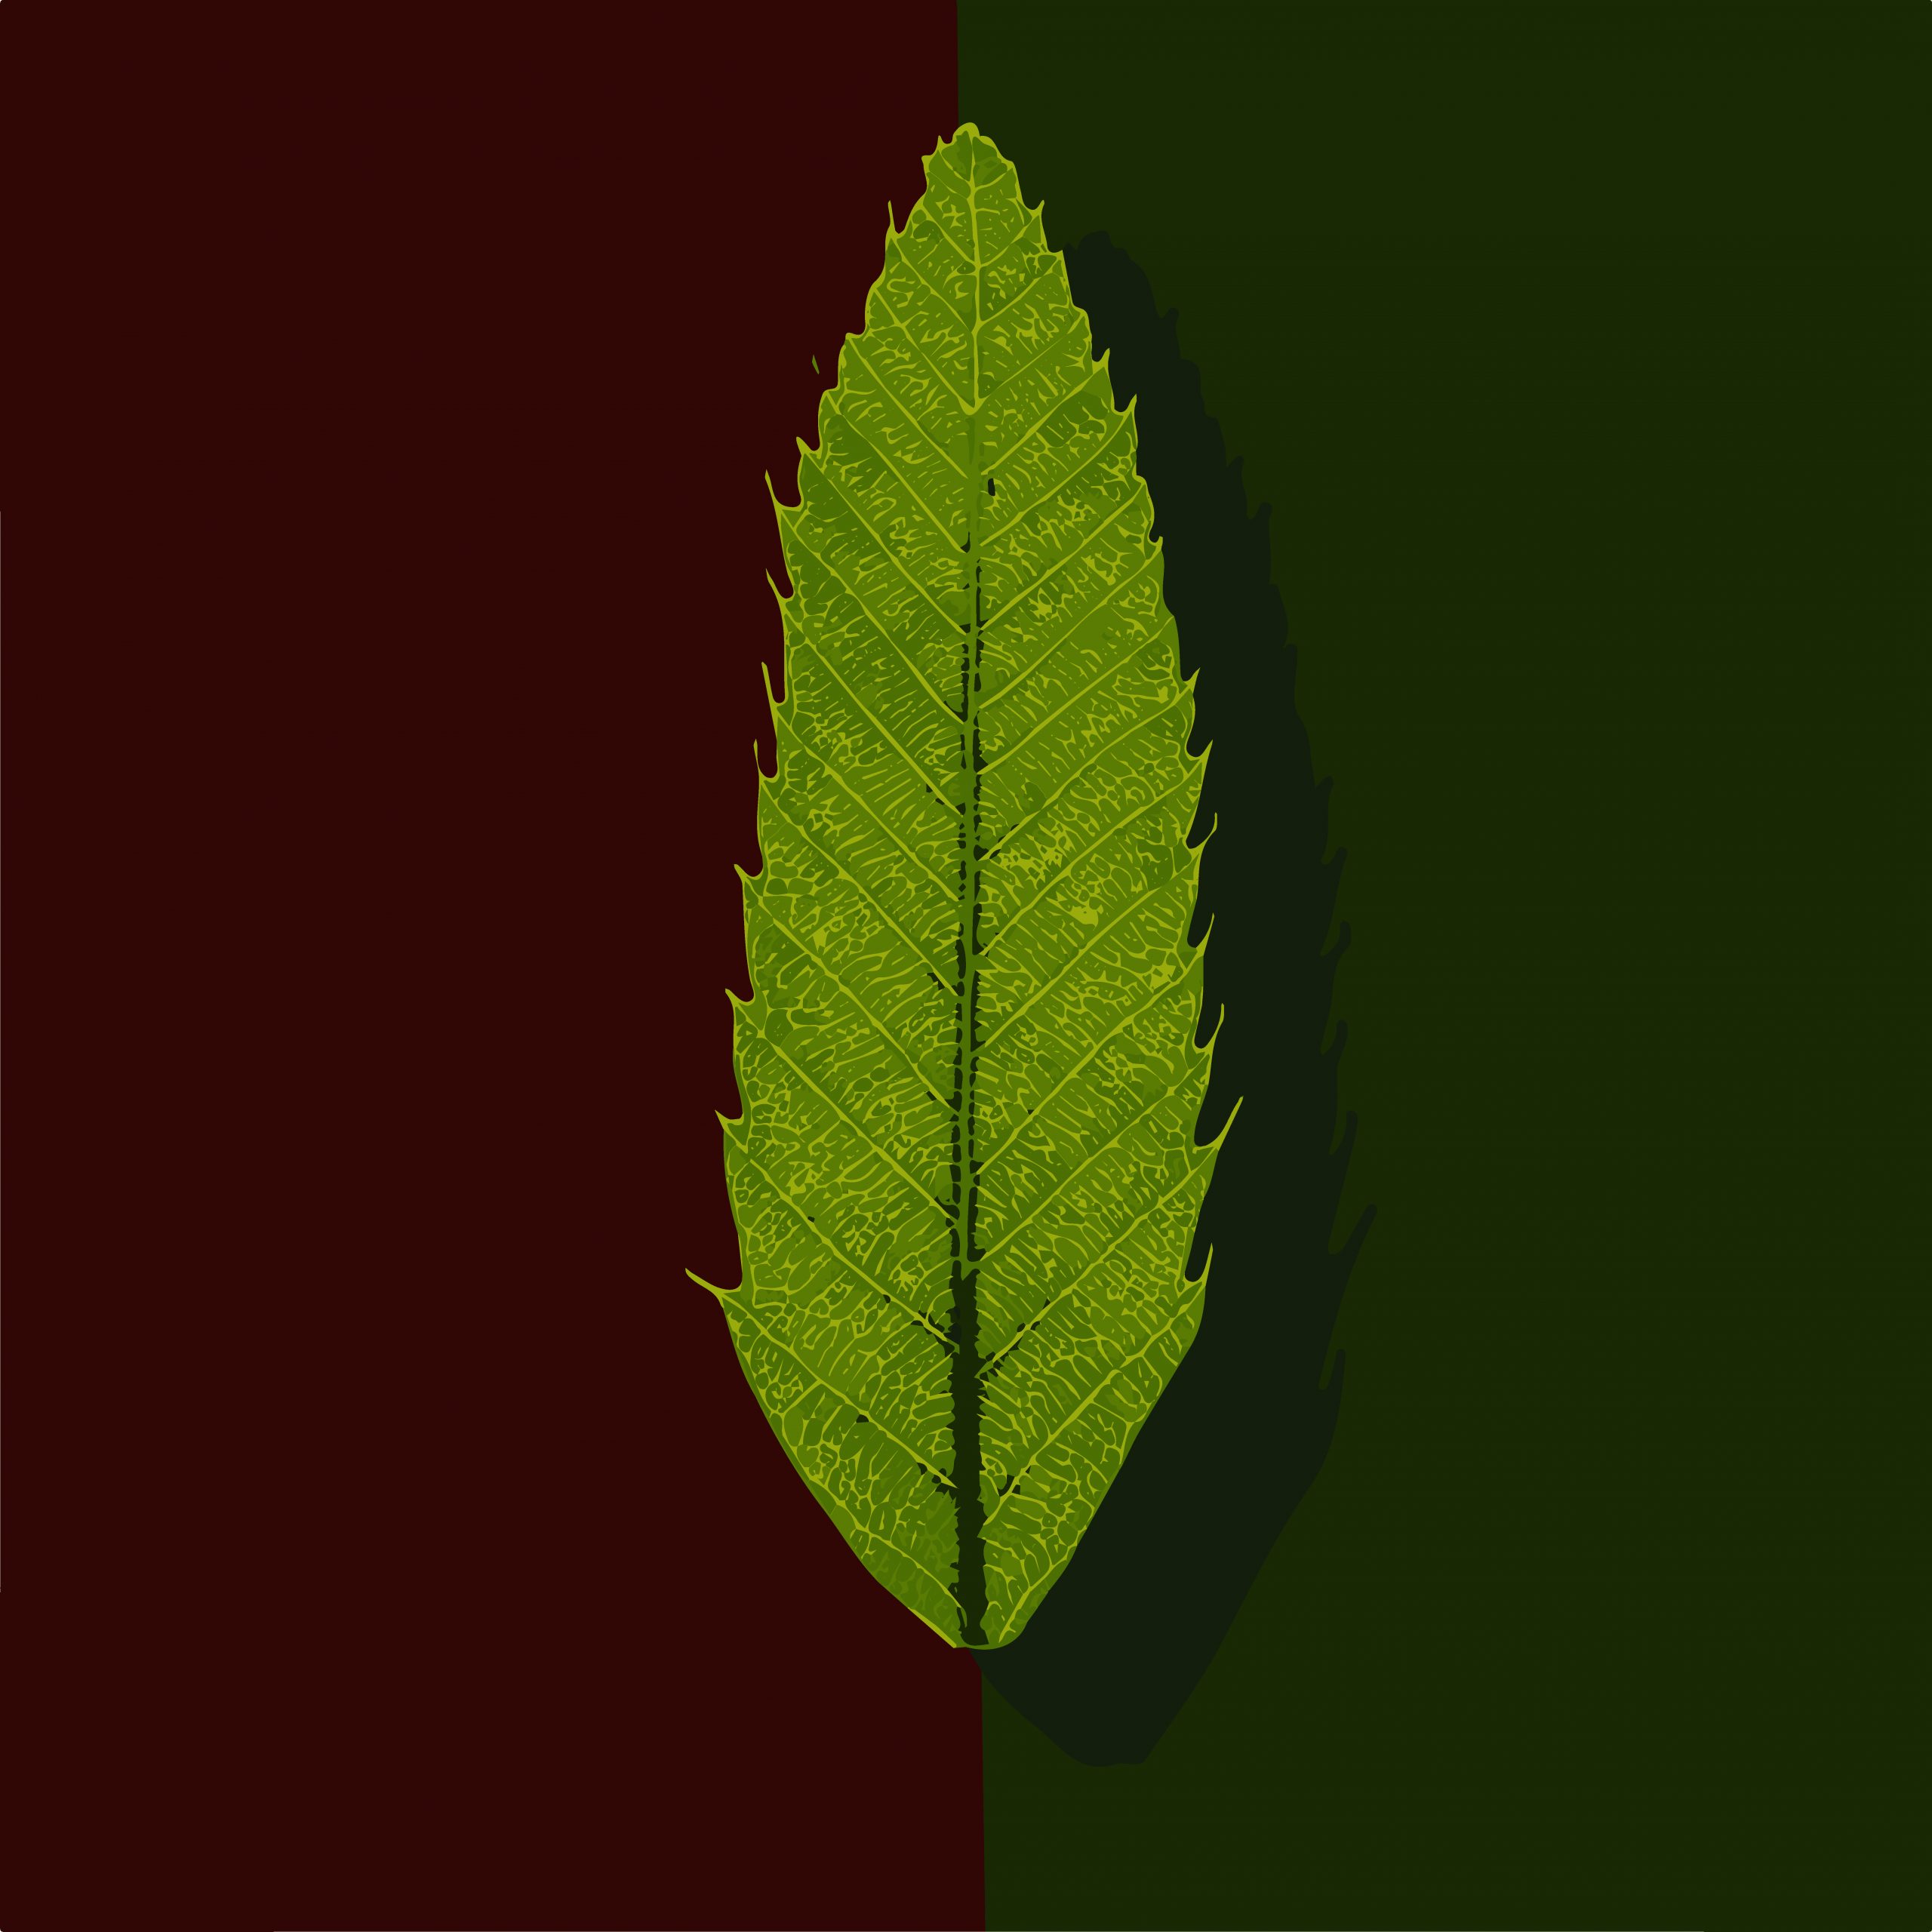 Illustration of a green leaf